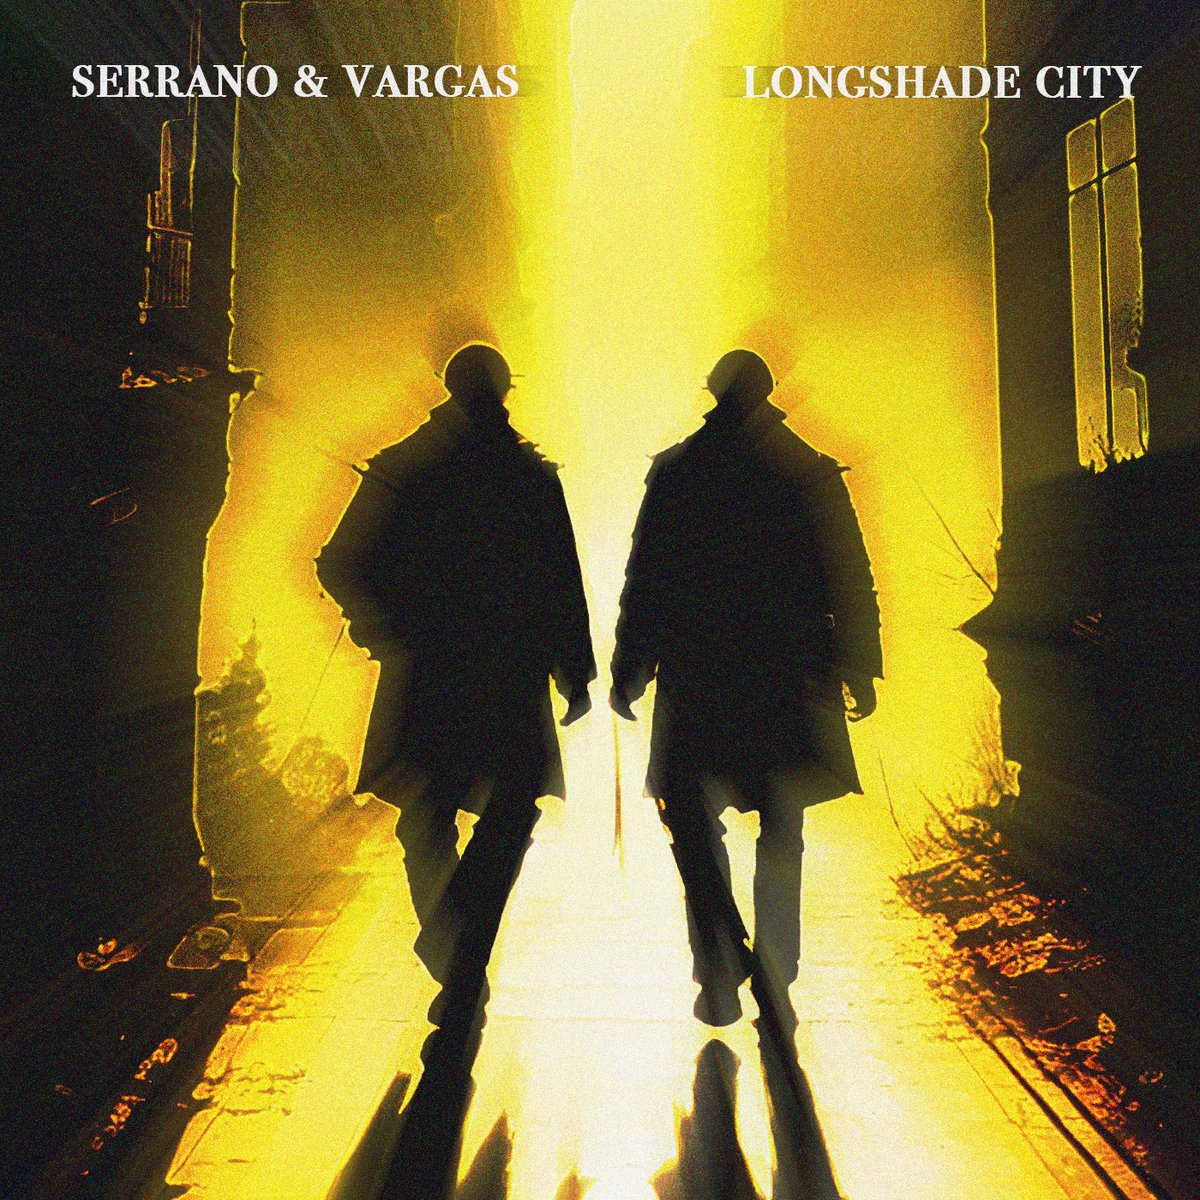 Serrano & Vargas – Longshade City (OST)